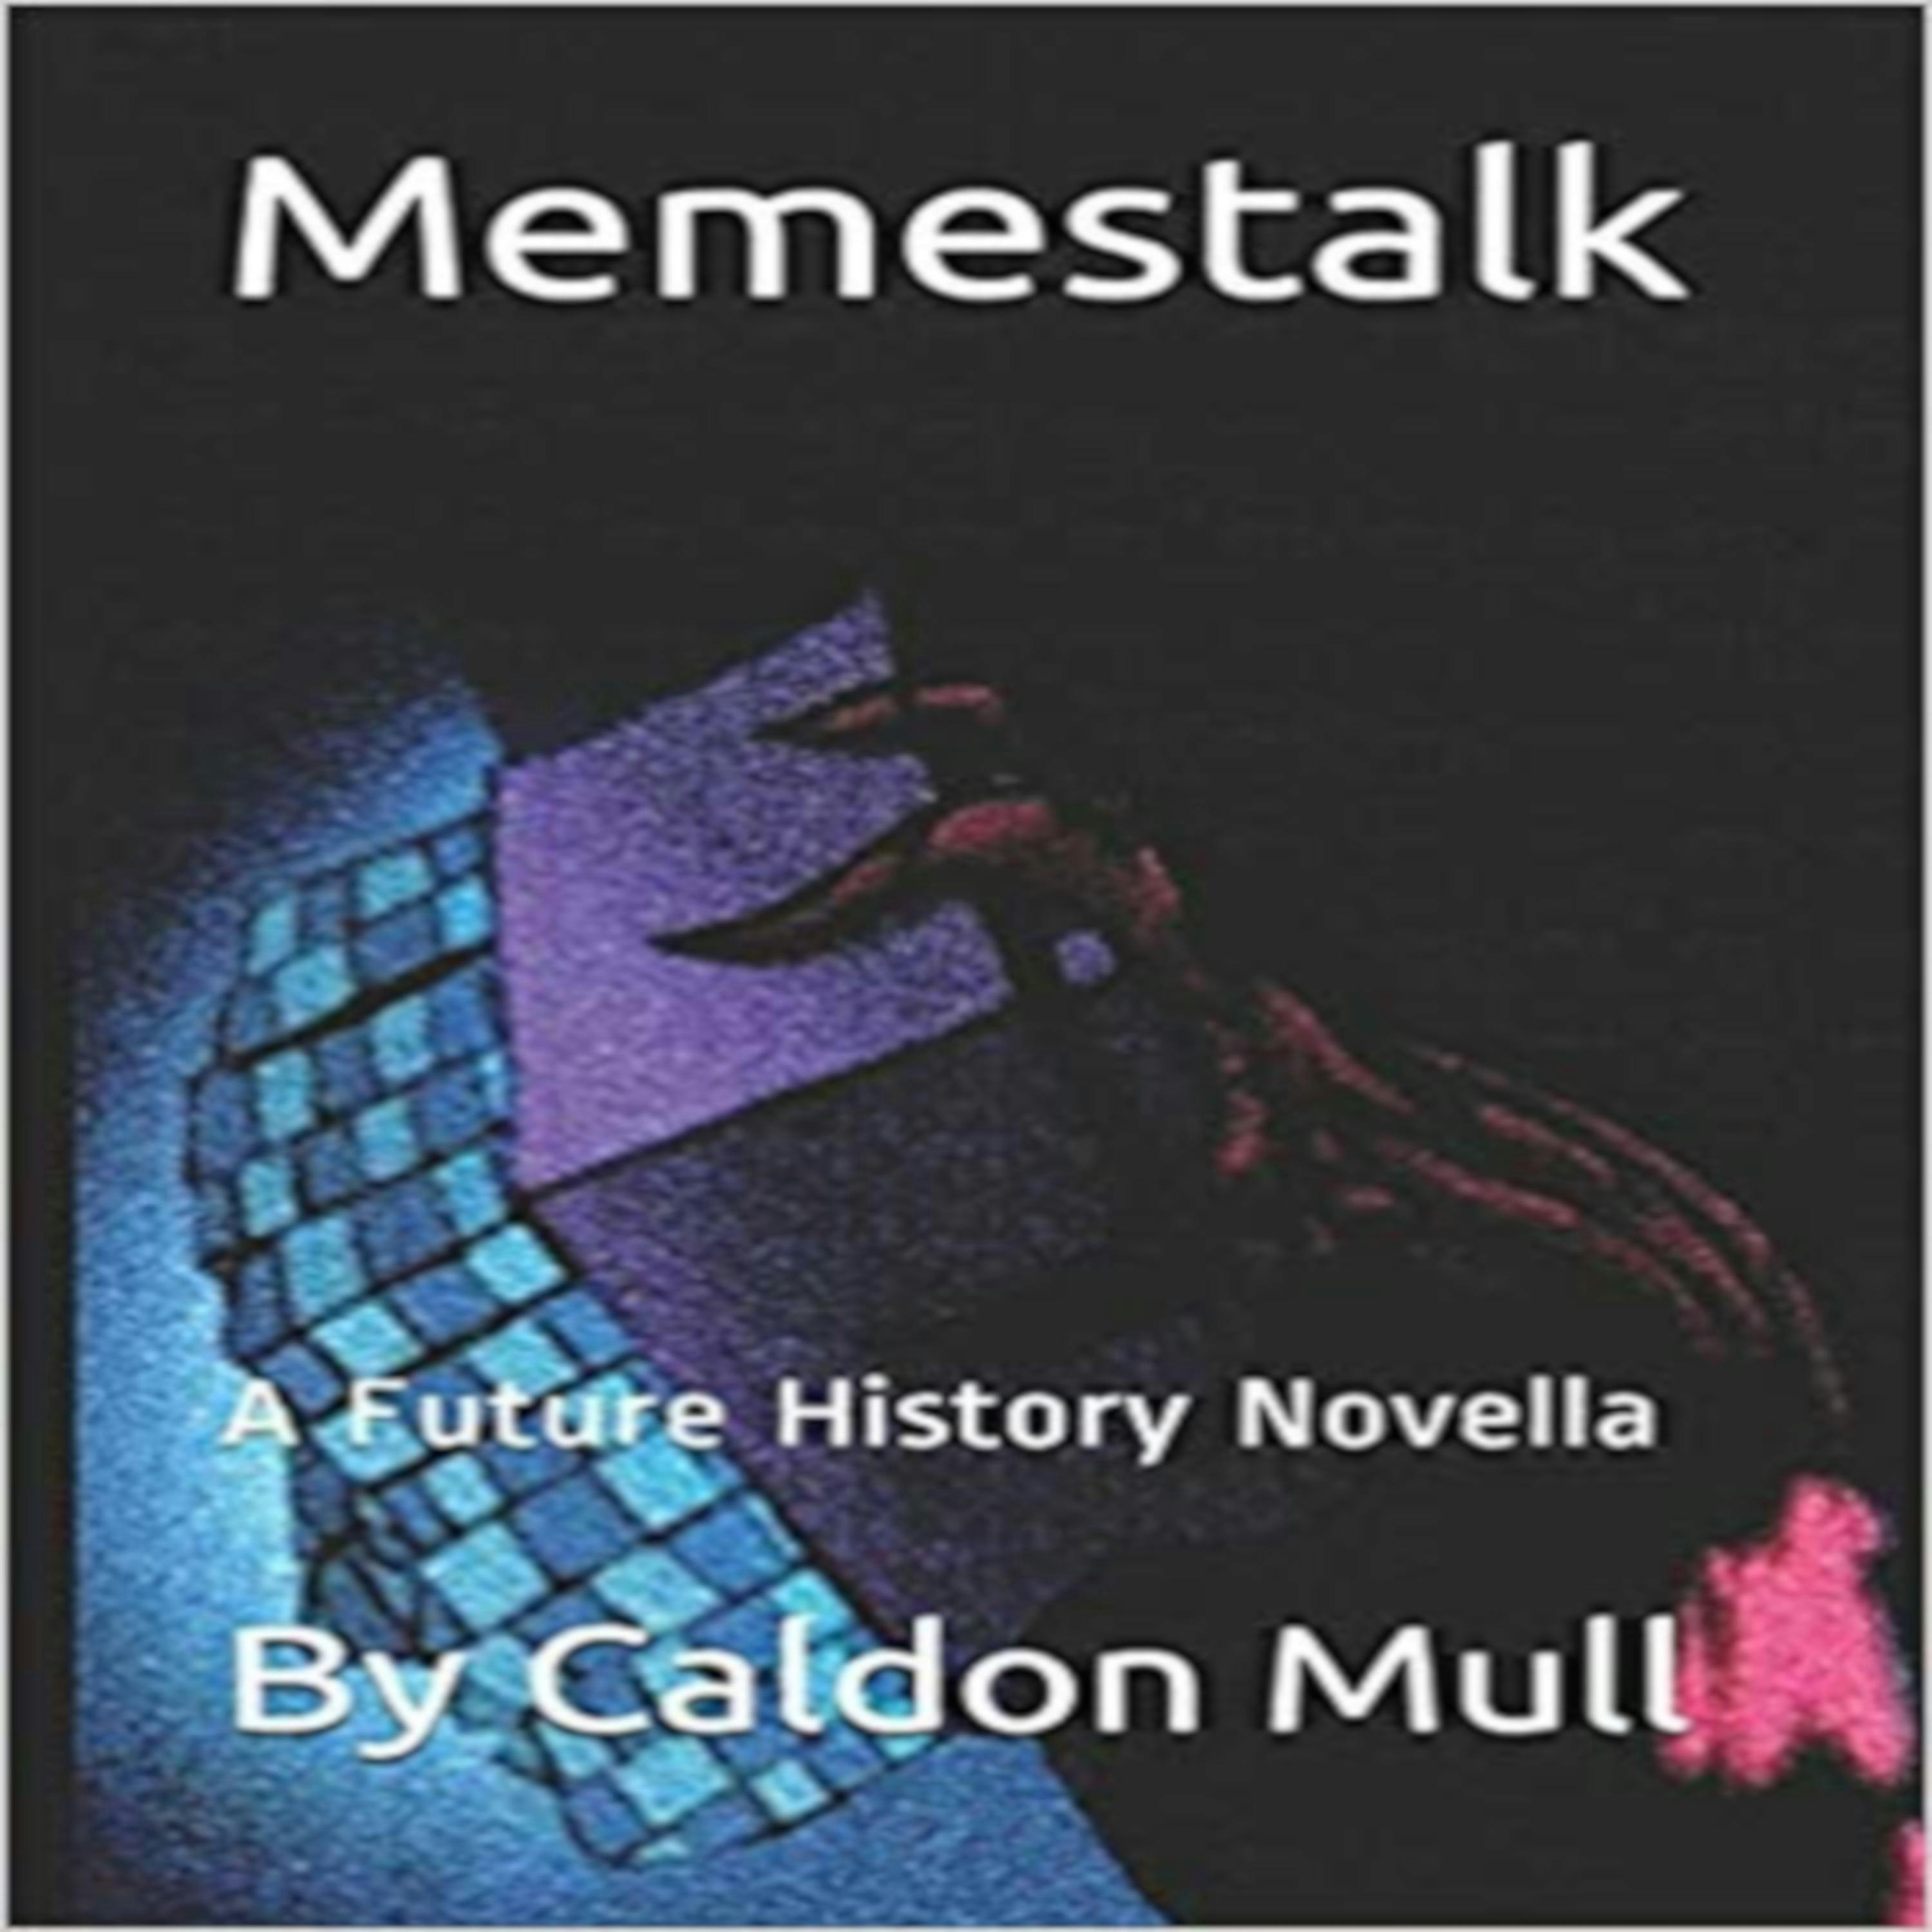 Memestalk - Caldon Mull